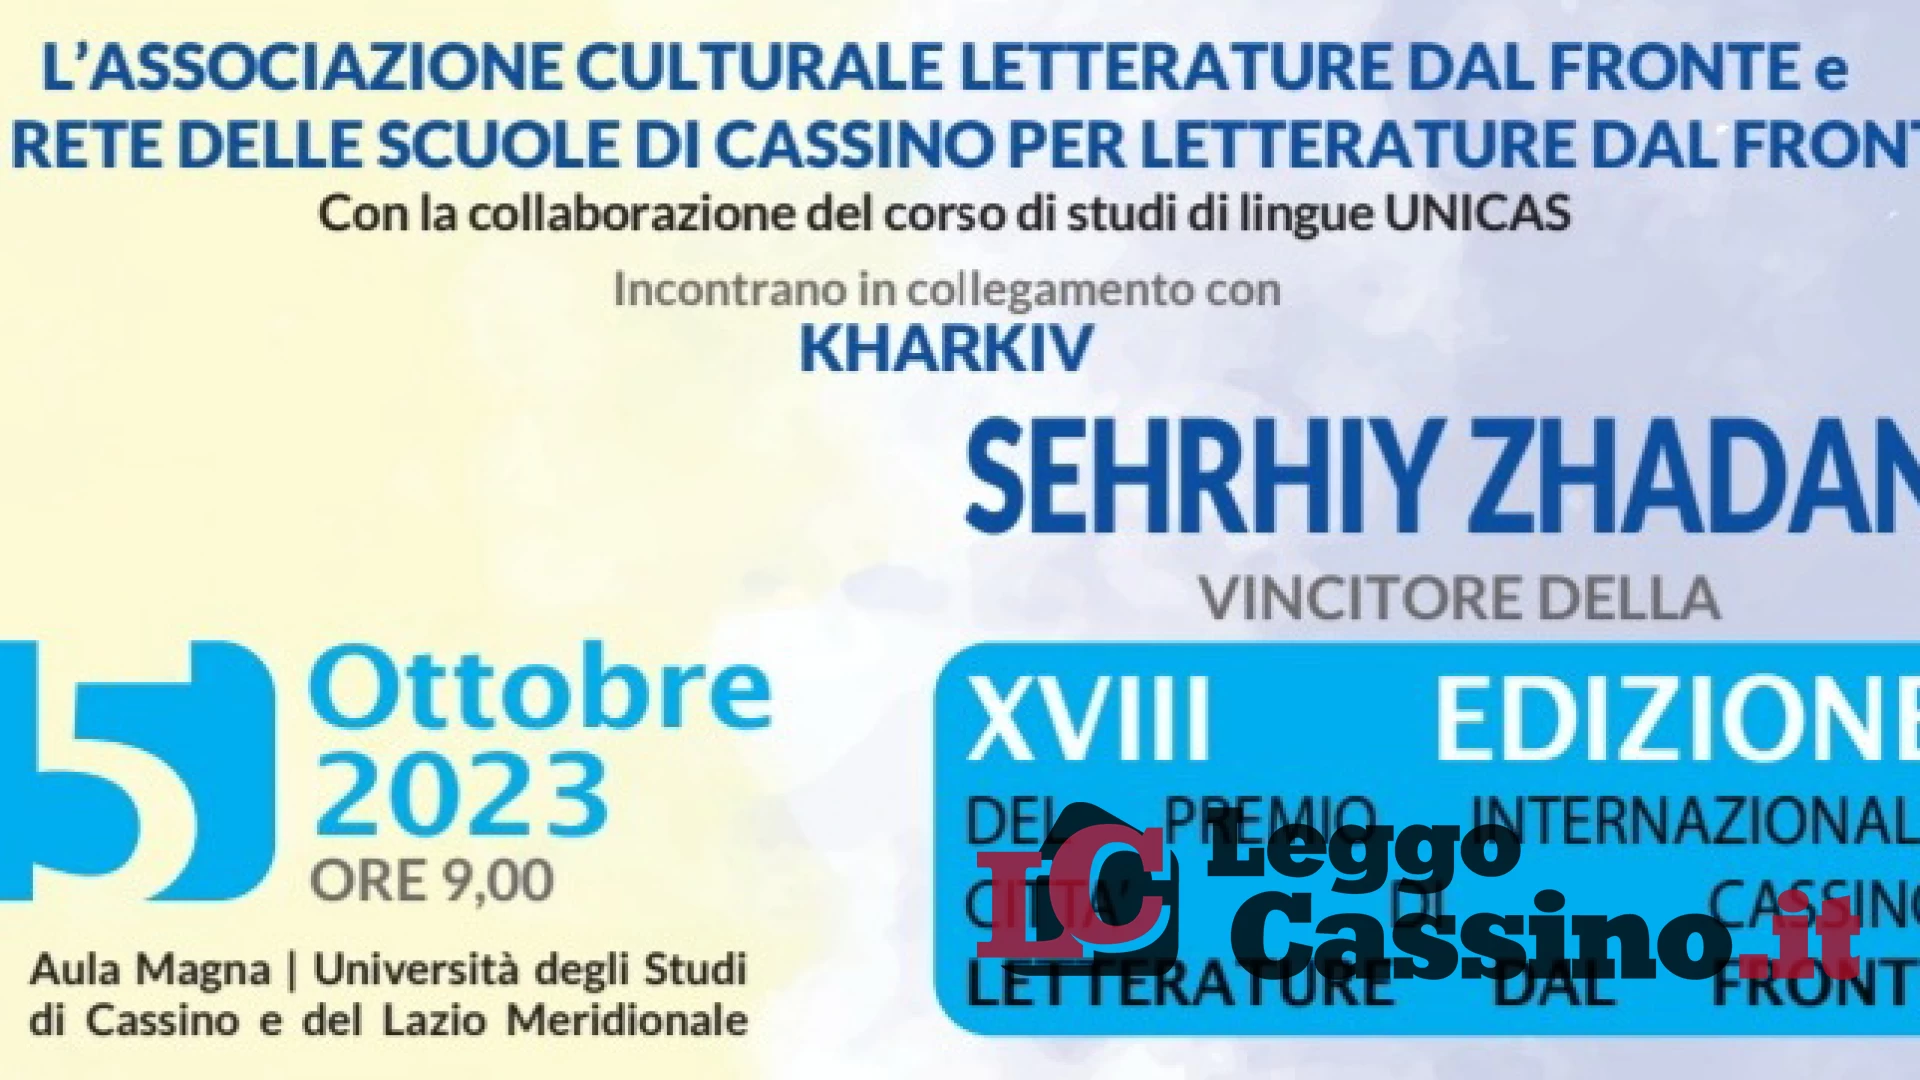 È Sehrhiy Zhadan il vincitore della XVIII edizione del Premio Internazionale Letterature dal Fronte Città di Cassino